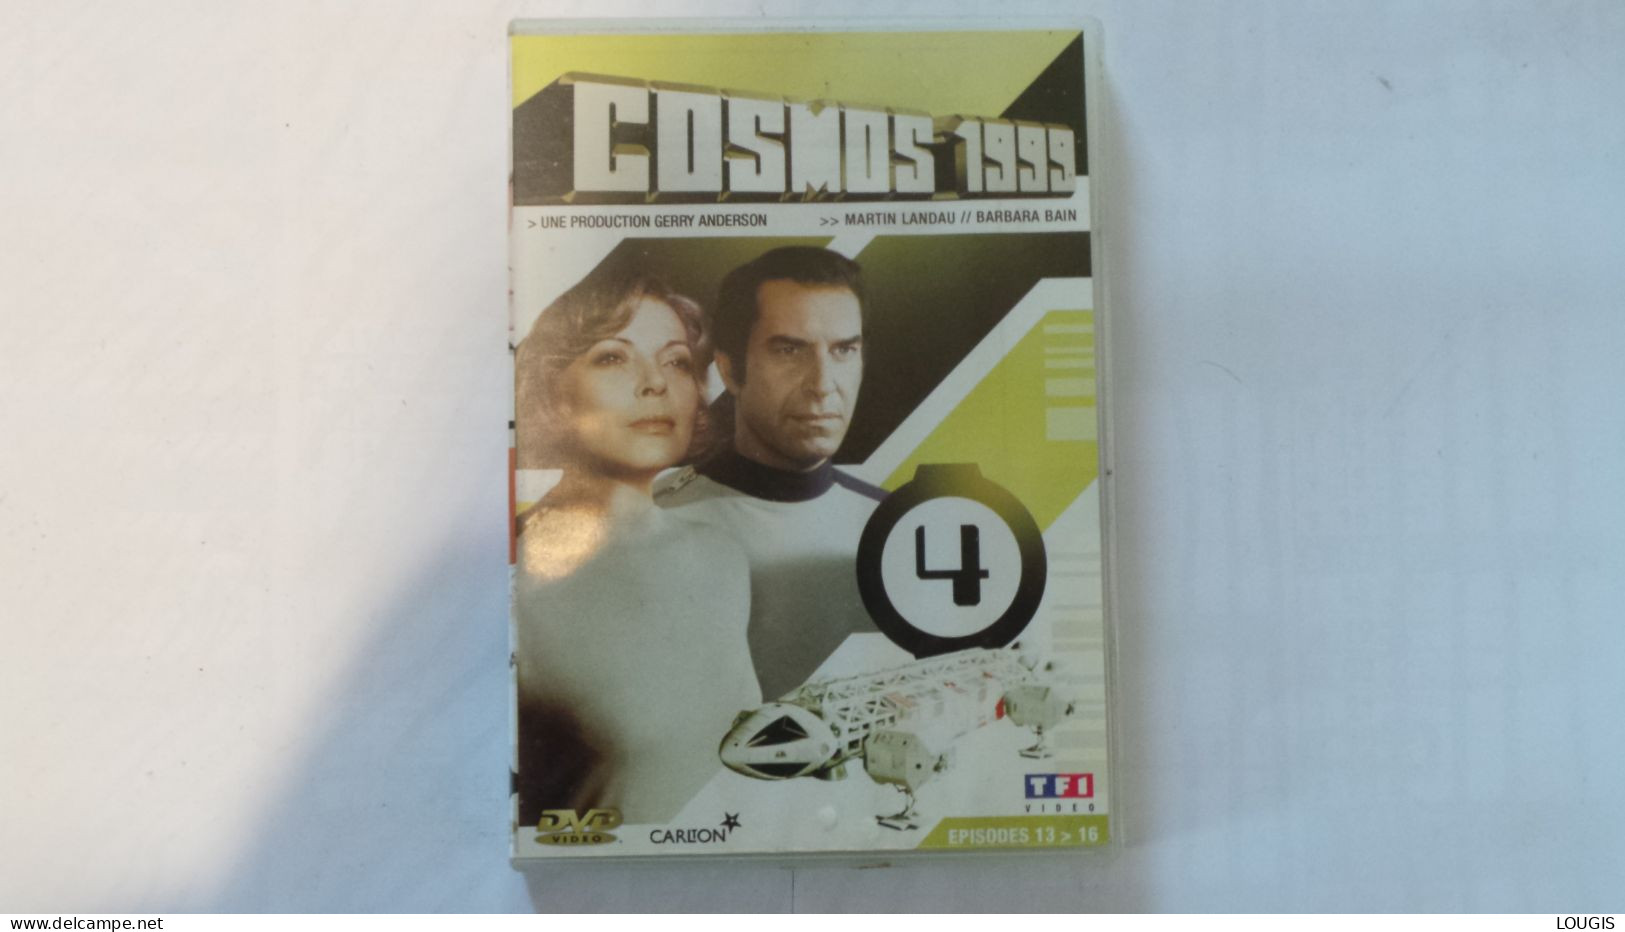 COSMOS 1999 - Classic